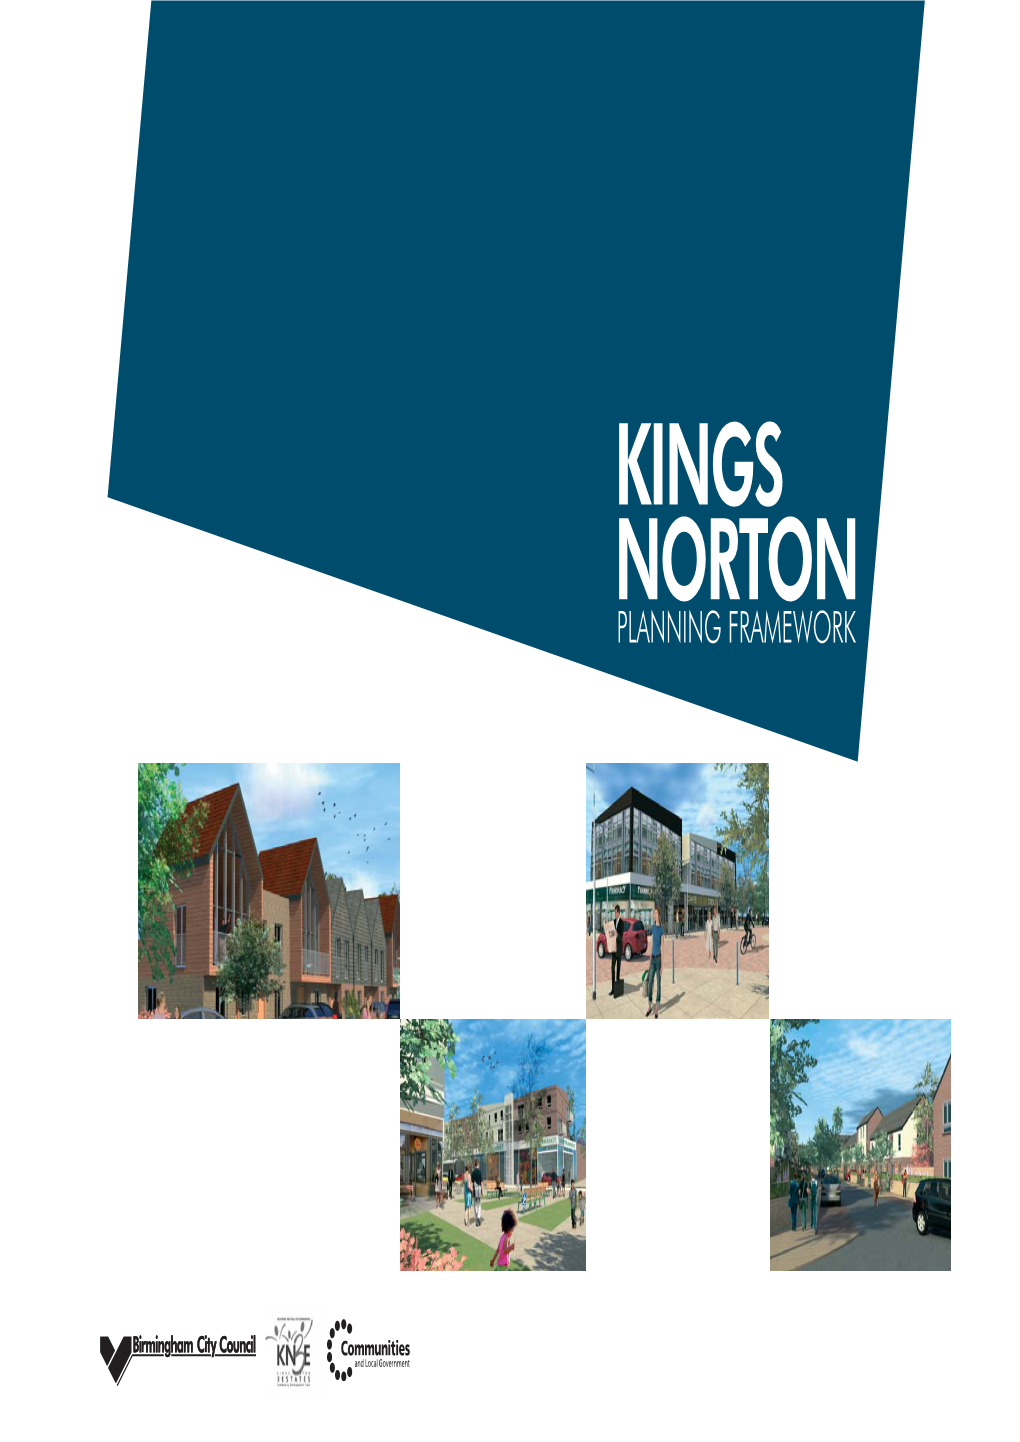 Download: Kings Norton Planning Framework